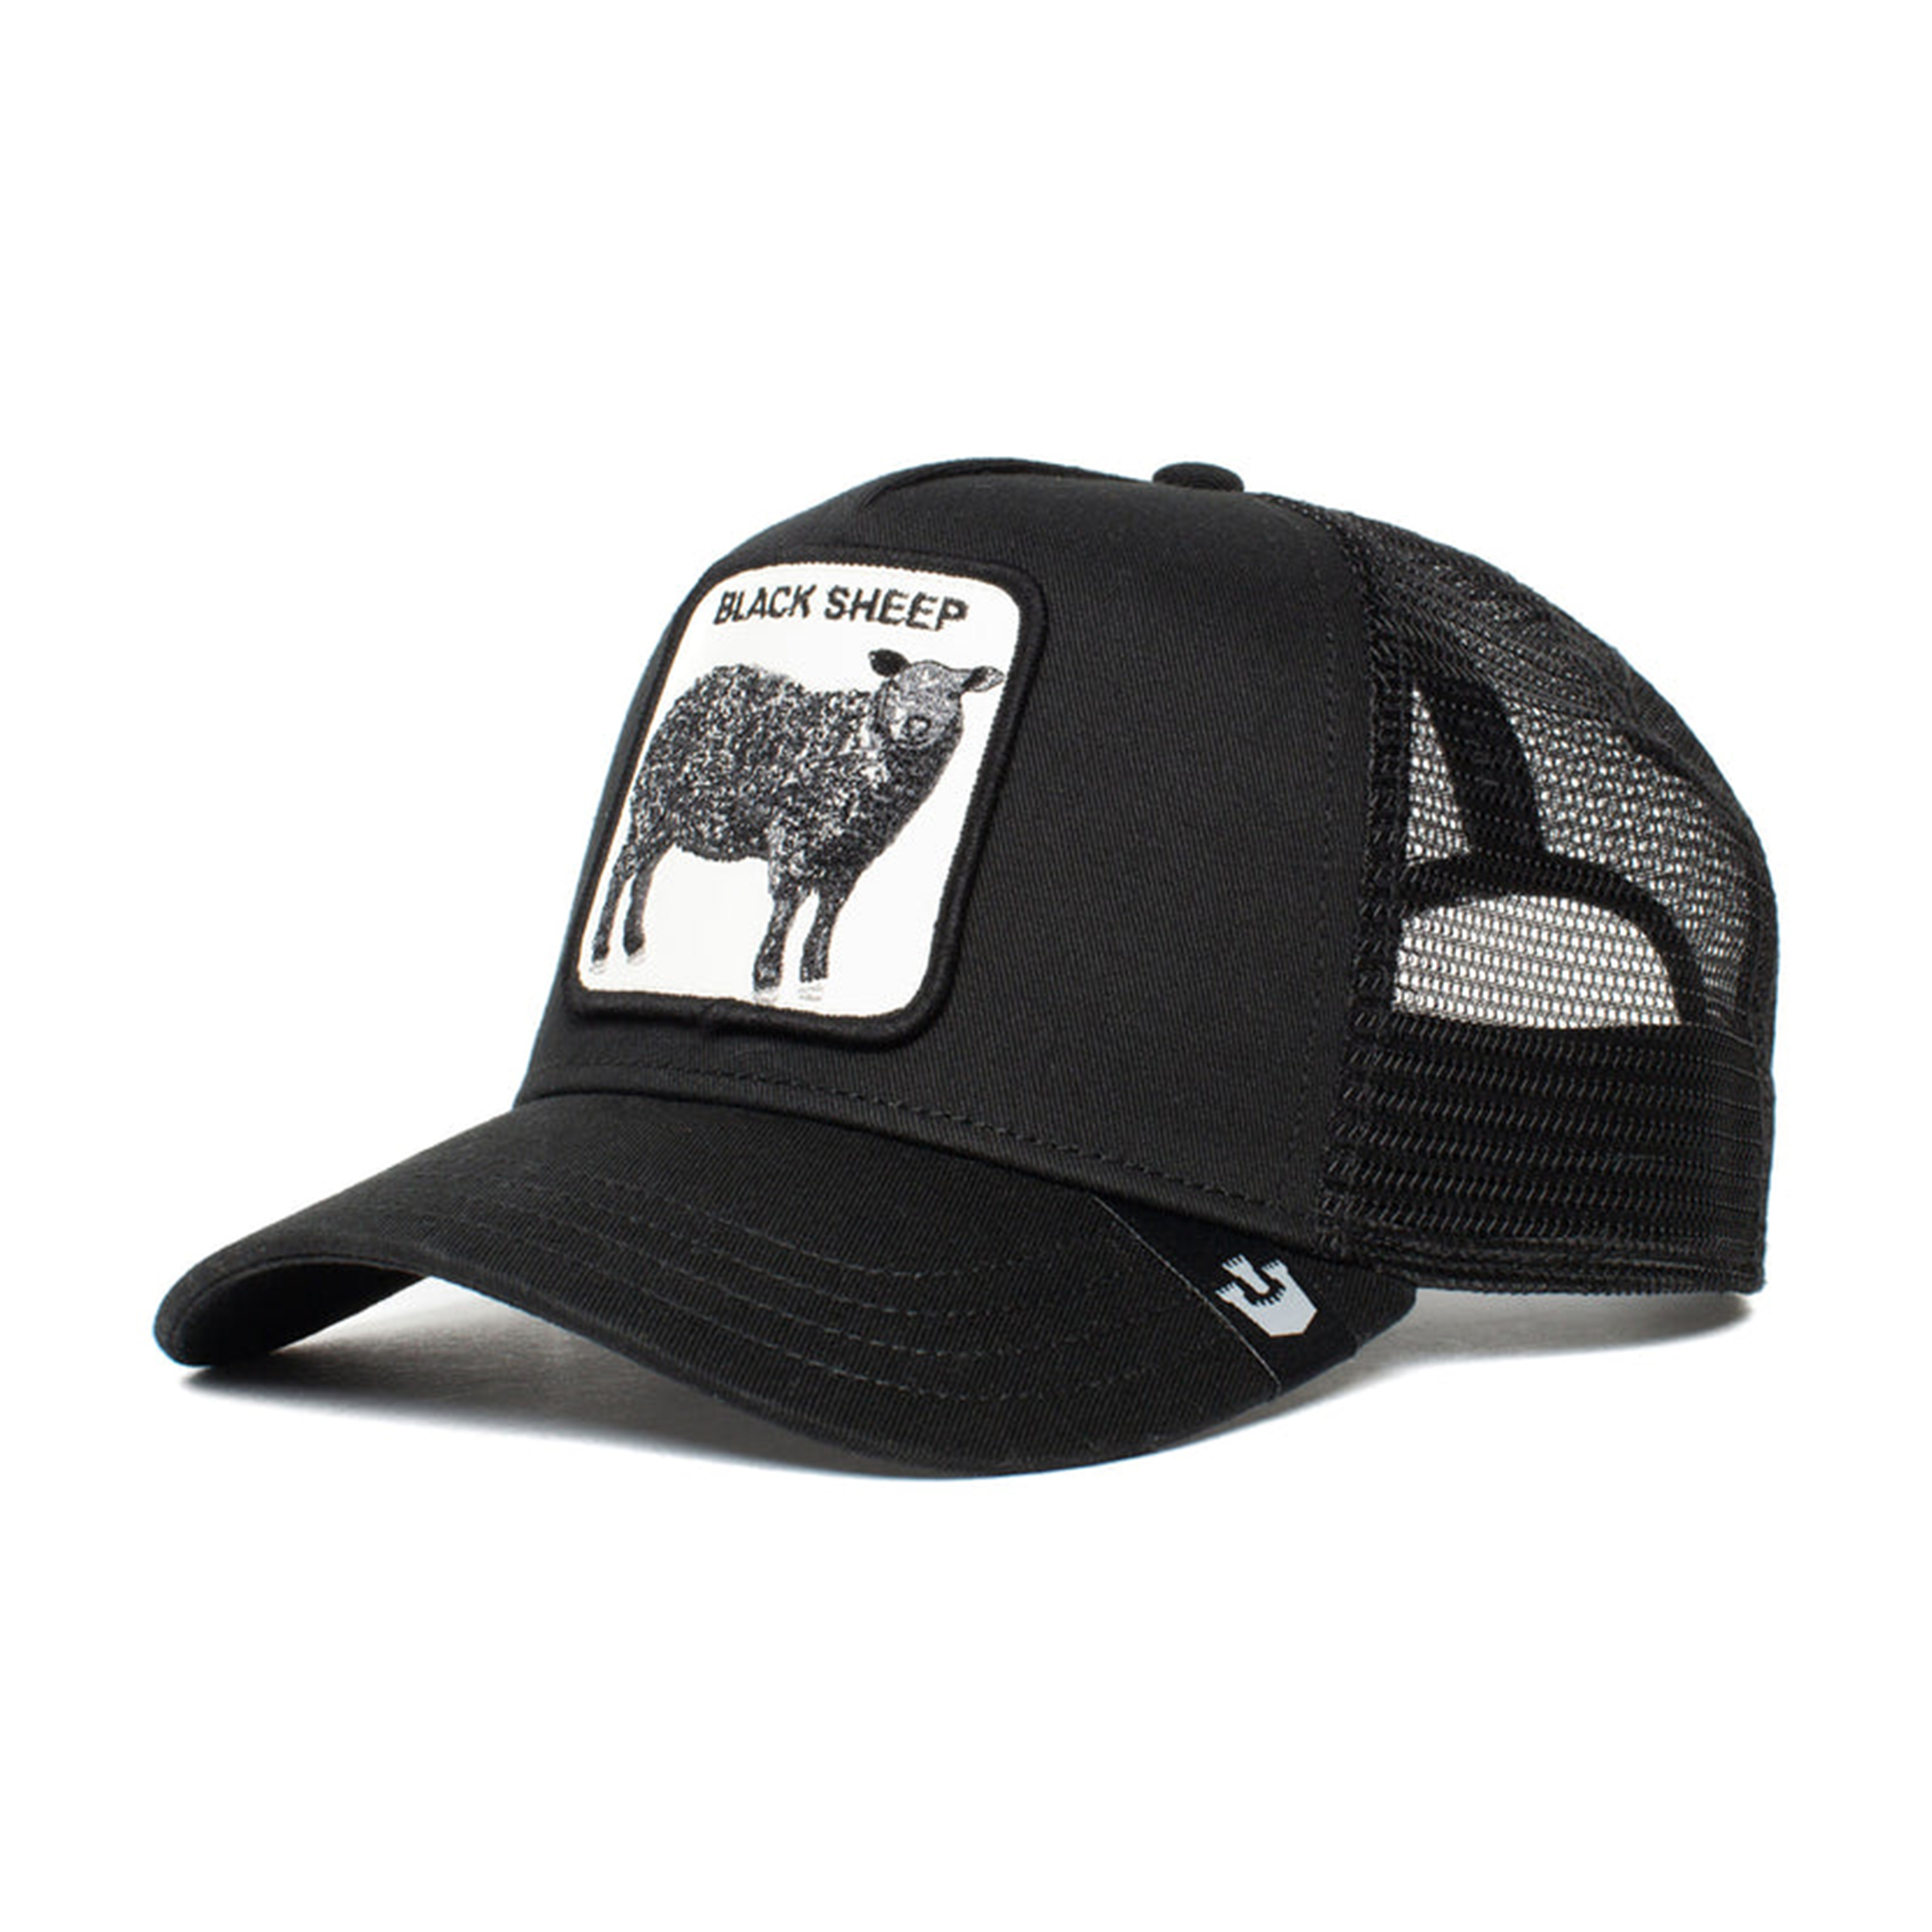 نکته خرید - قیمت روز کلاه کپ گورین براز مدل THE BLK SHEEP 101-0380 خرید